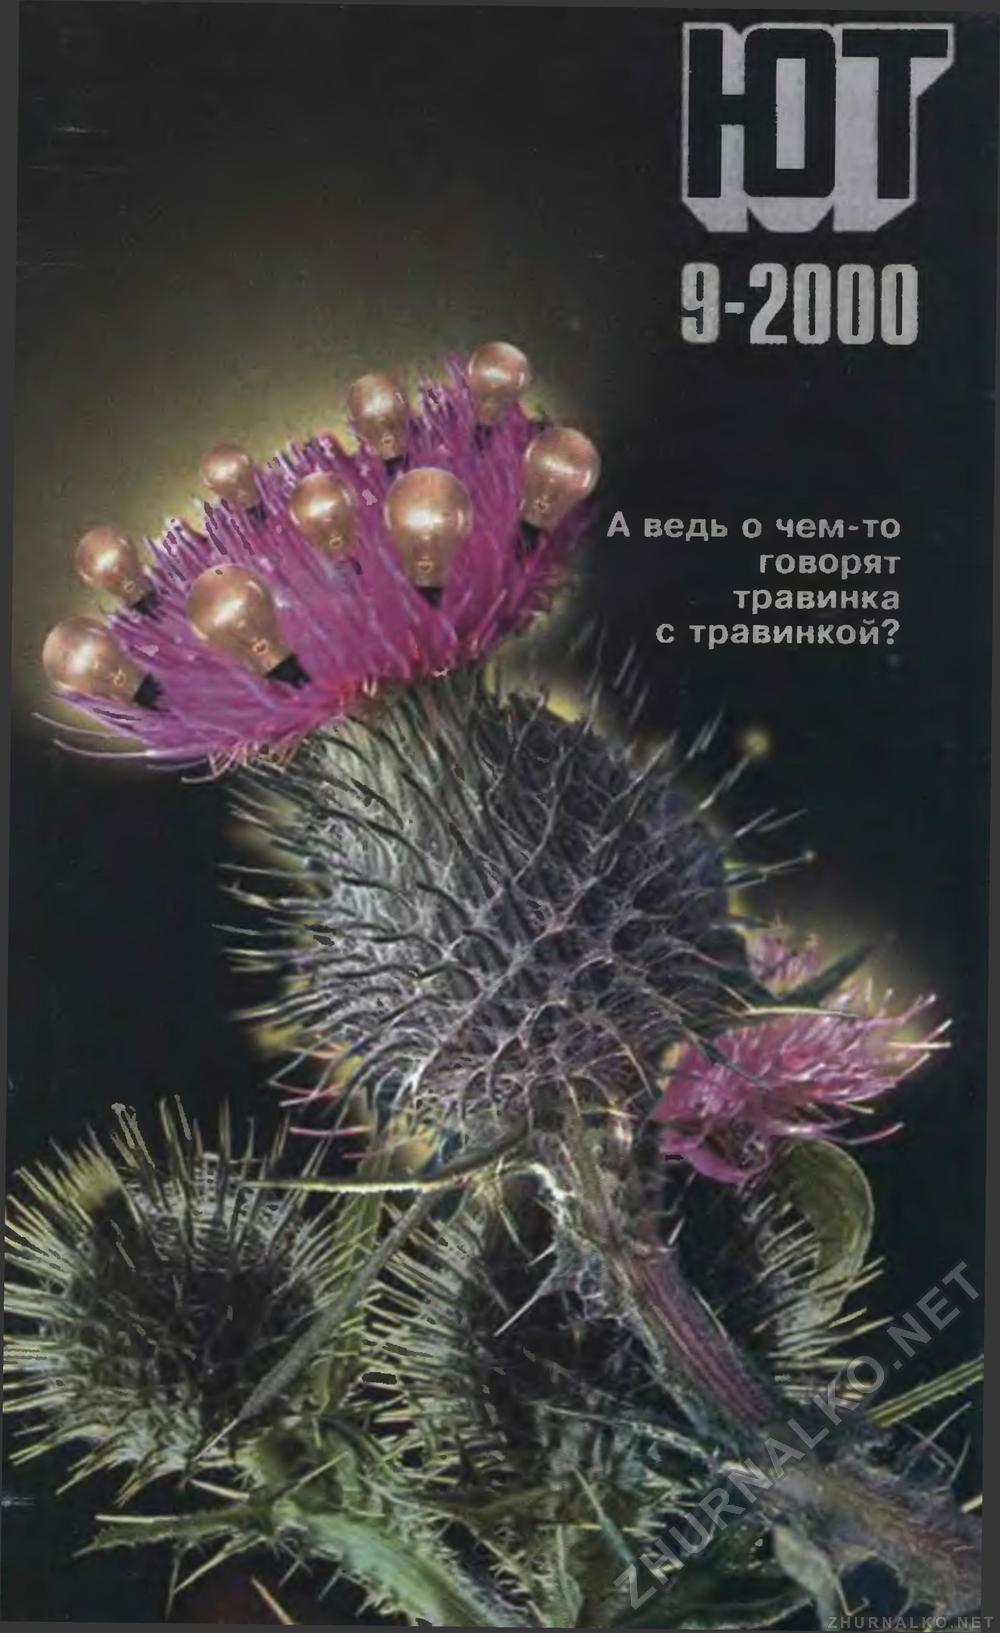   2000-09,  1